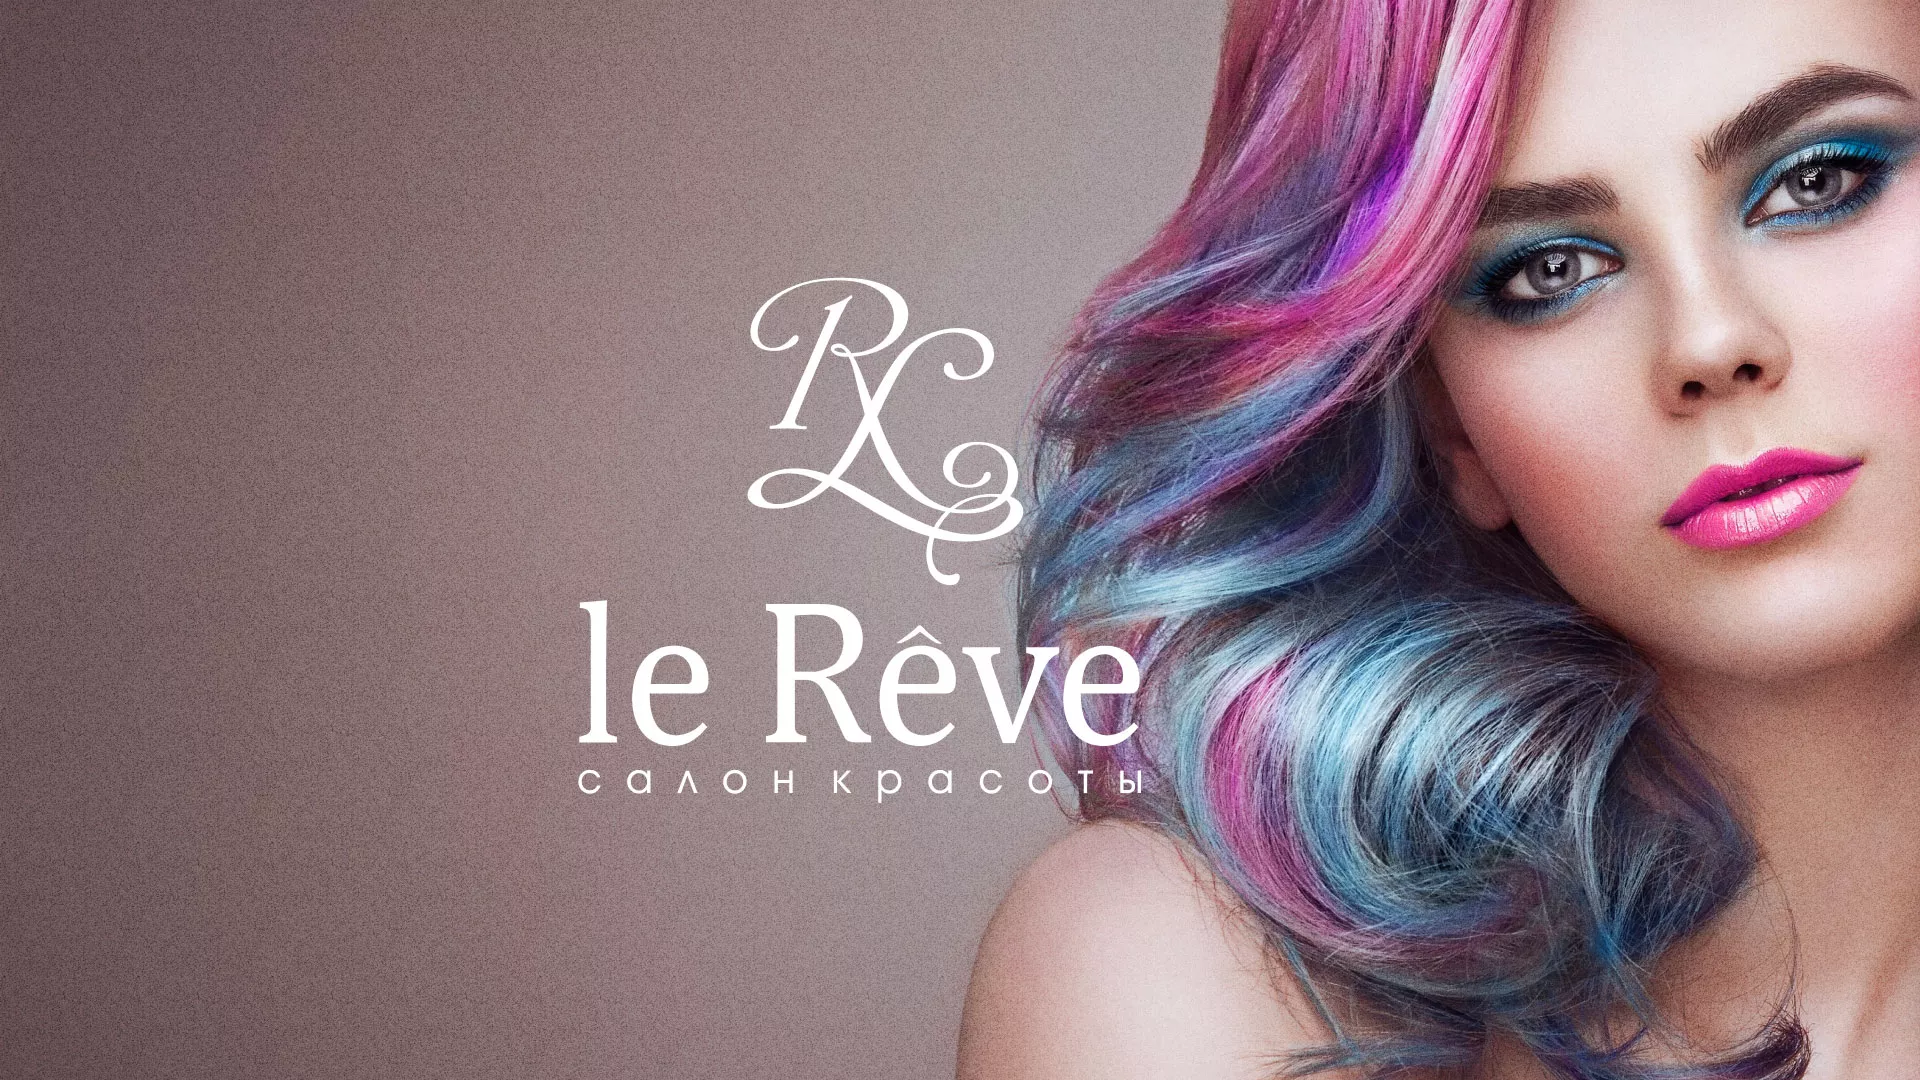 Создание сайта для салона красоты «Le Reve» в Вологде